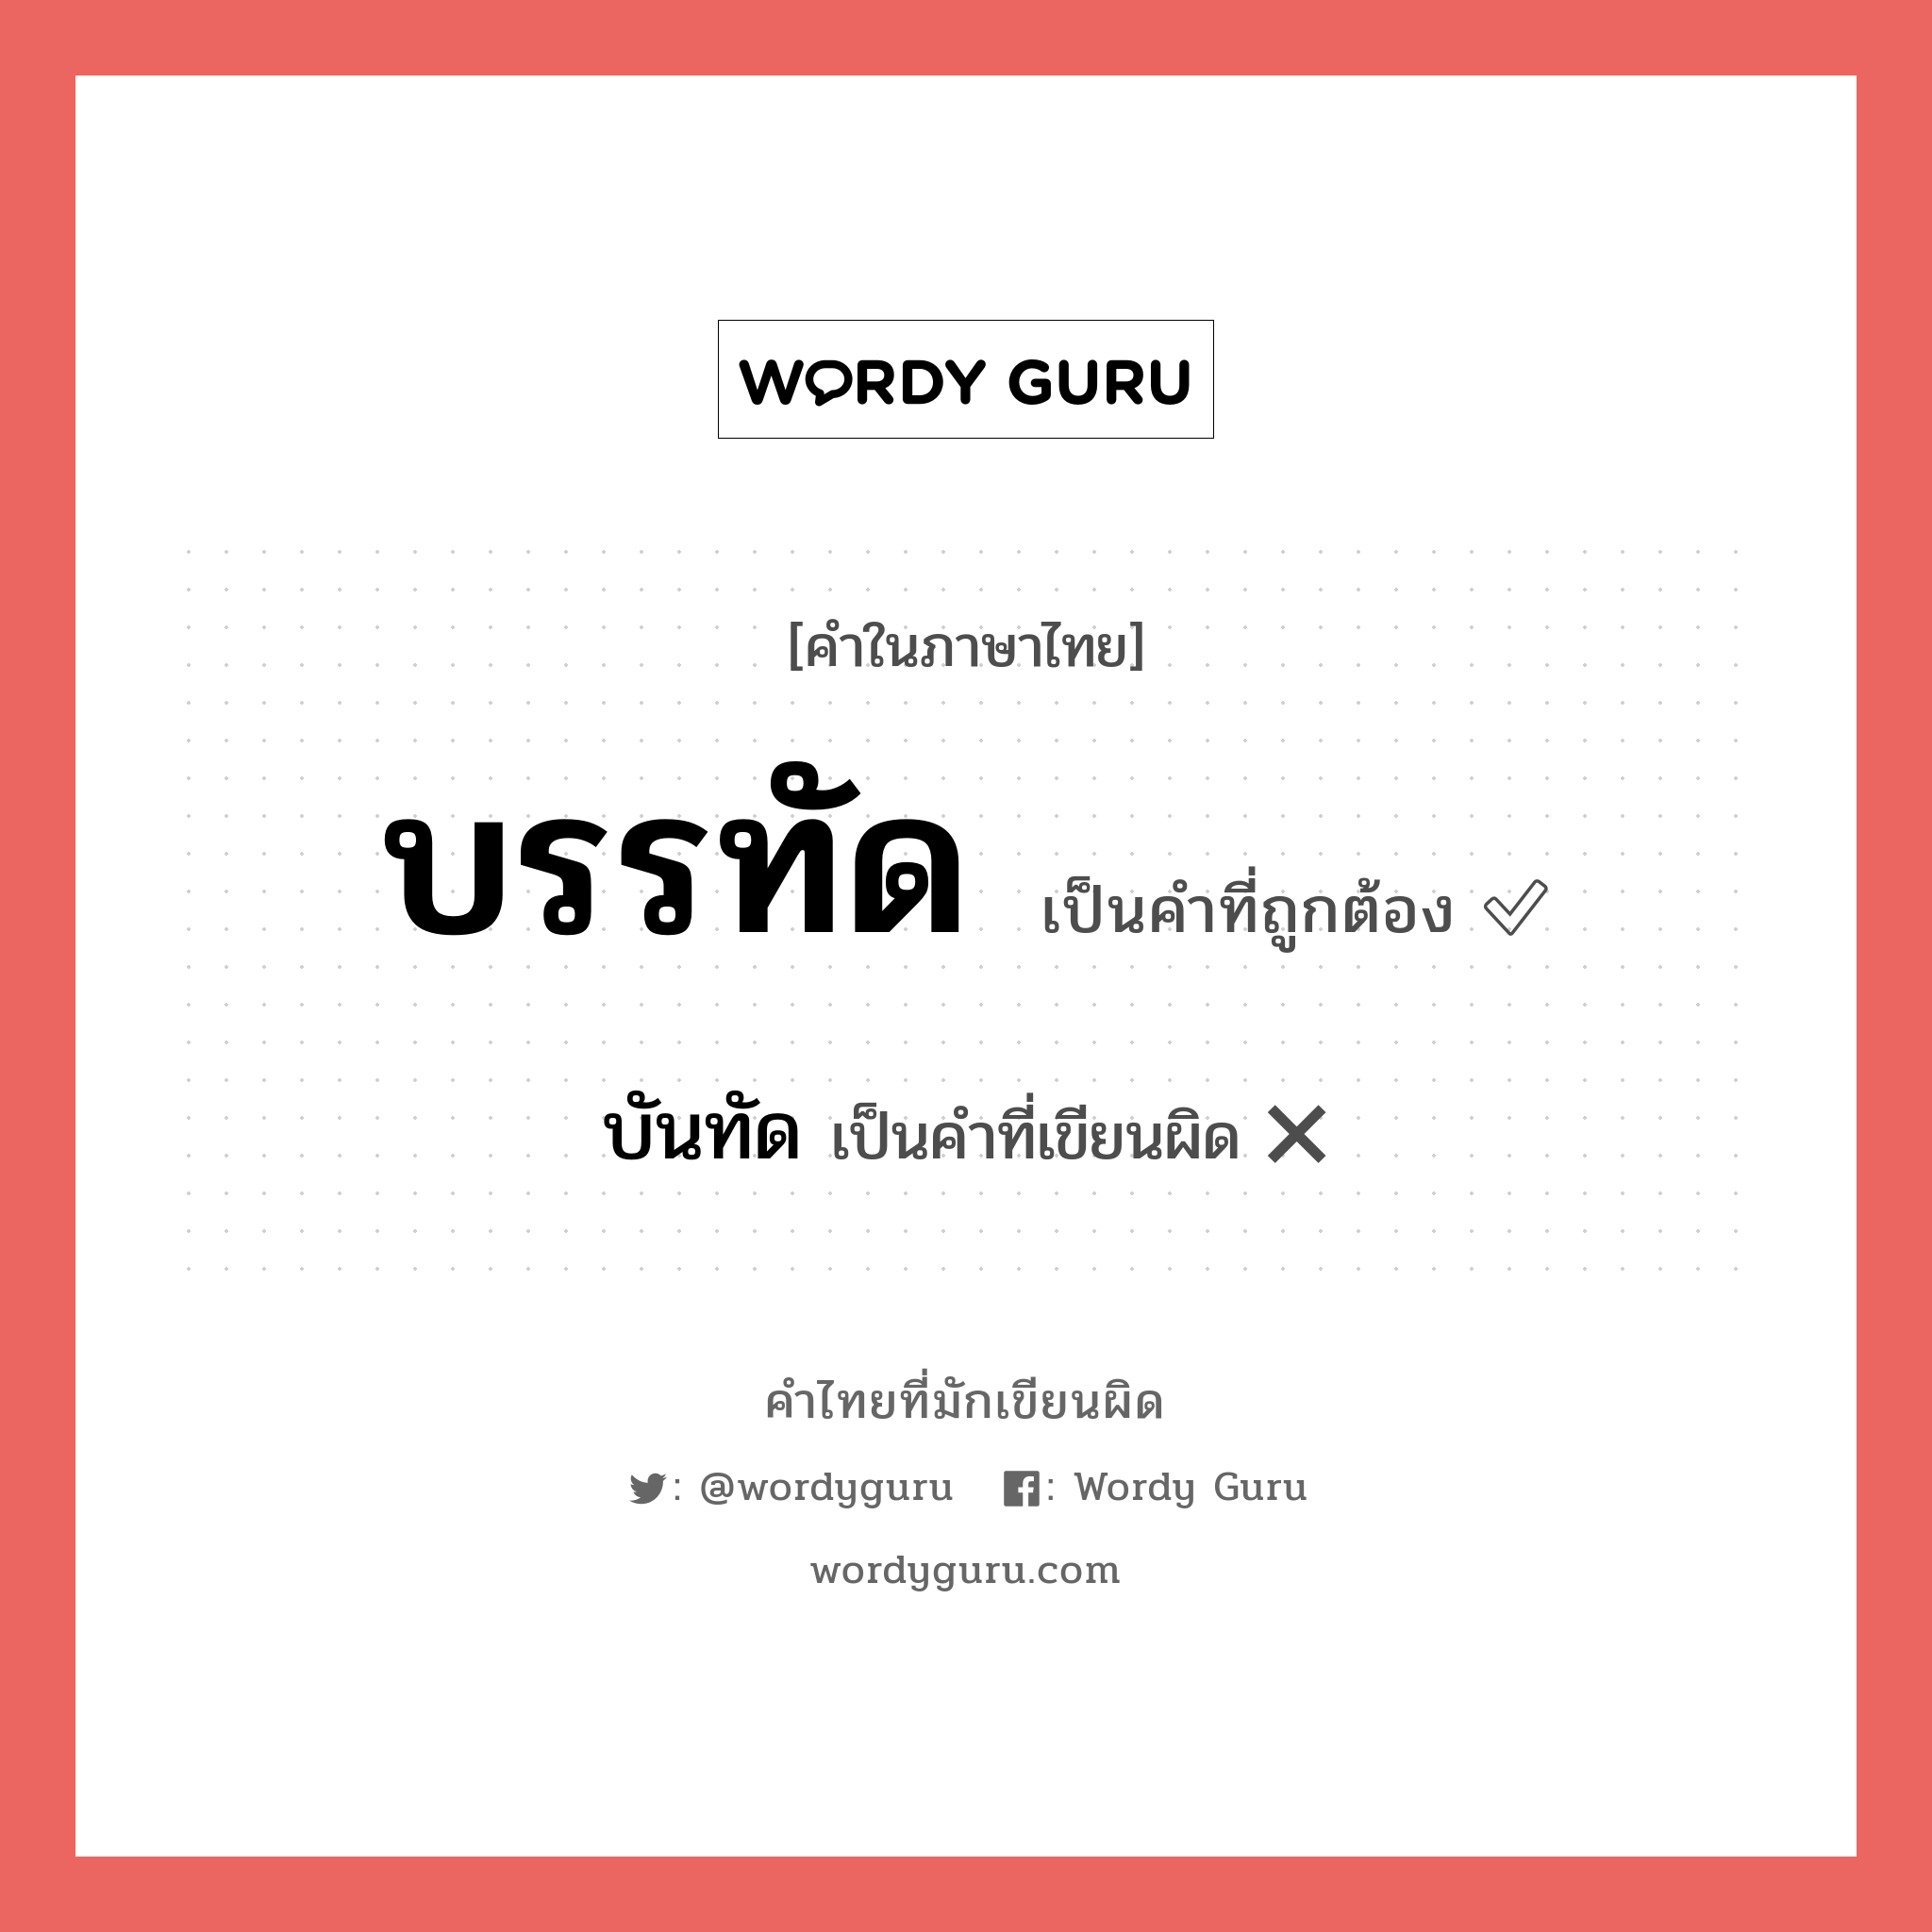 บรรทัด หรือ บันทัด เขียนยังไง? คำไหนเขียนถูก?, คำในภาษาไทยที่มักเขียนผิด บรรทัด คำที่ผิด ❌ บันทัด